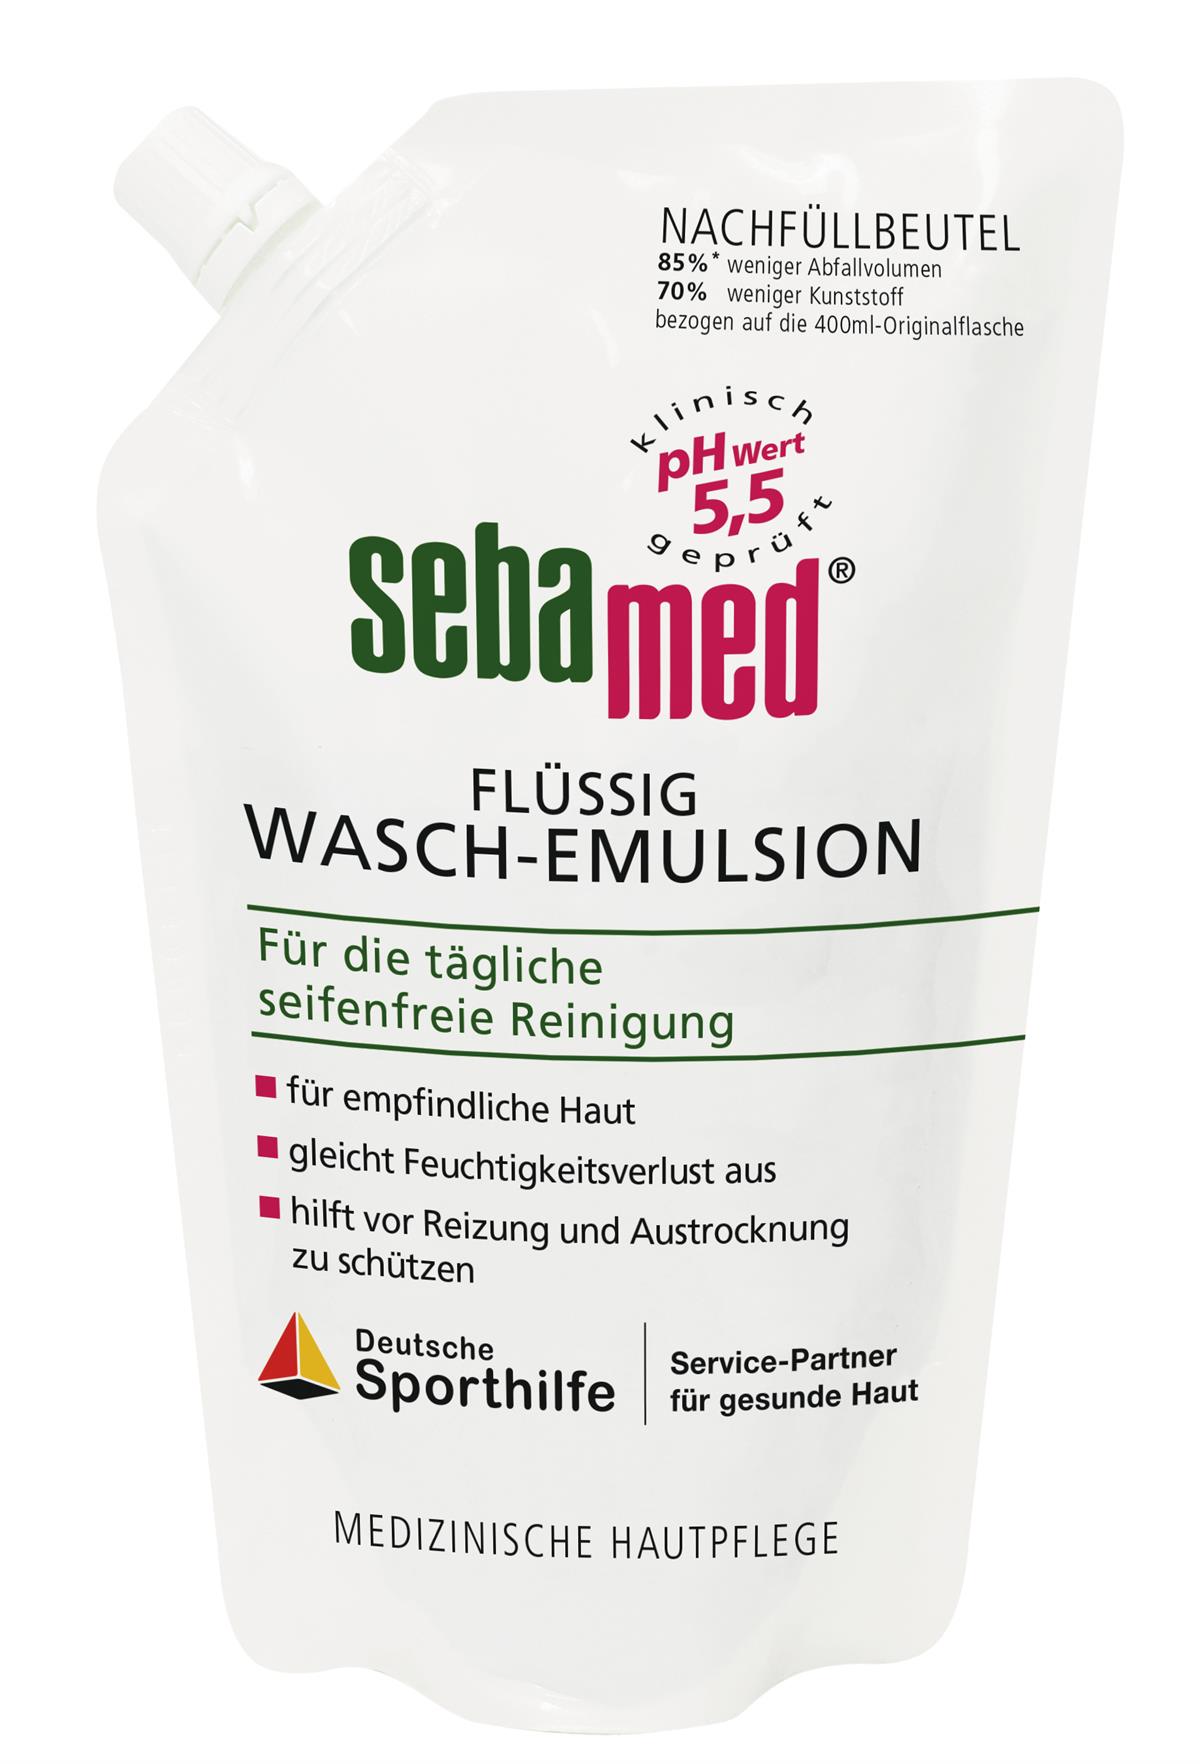 sebamed Flüssig Wasch-Emulsion Nachfüllbeutel (400 ml): 4,75 EUR